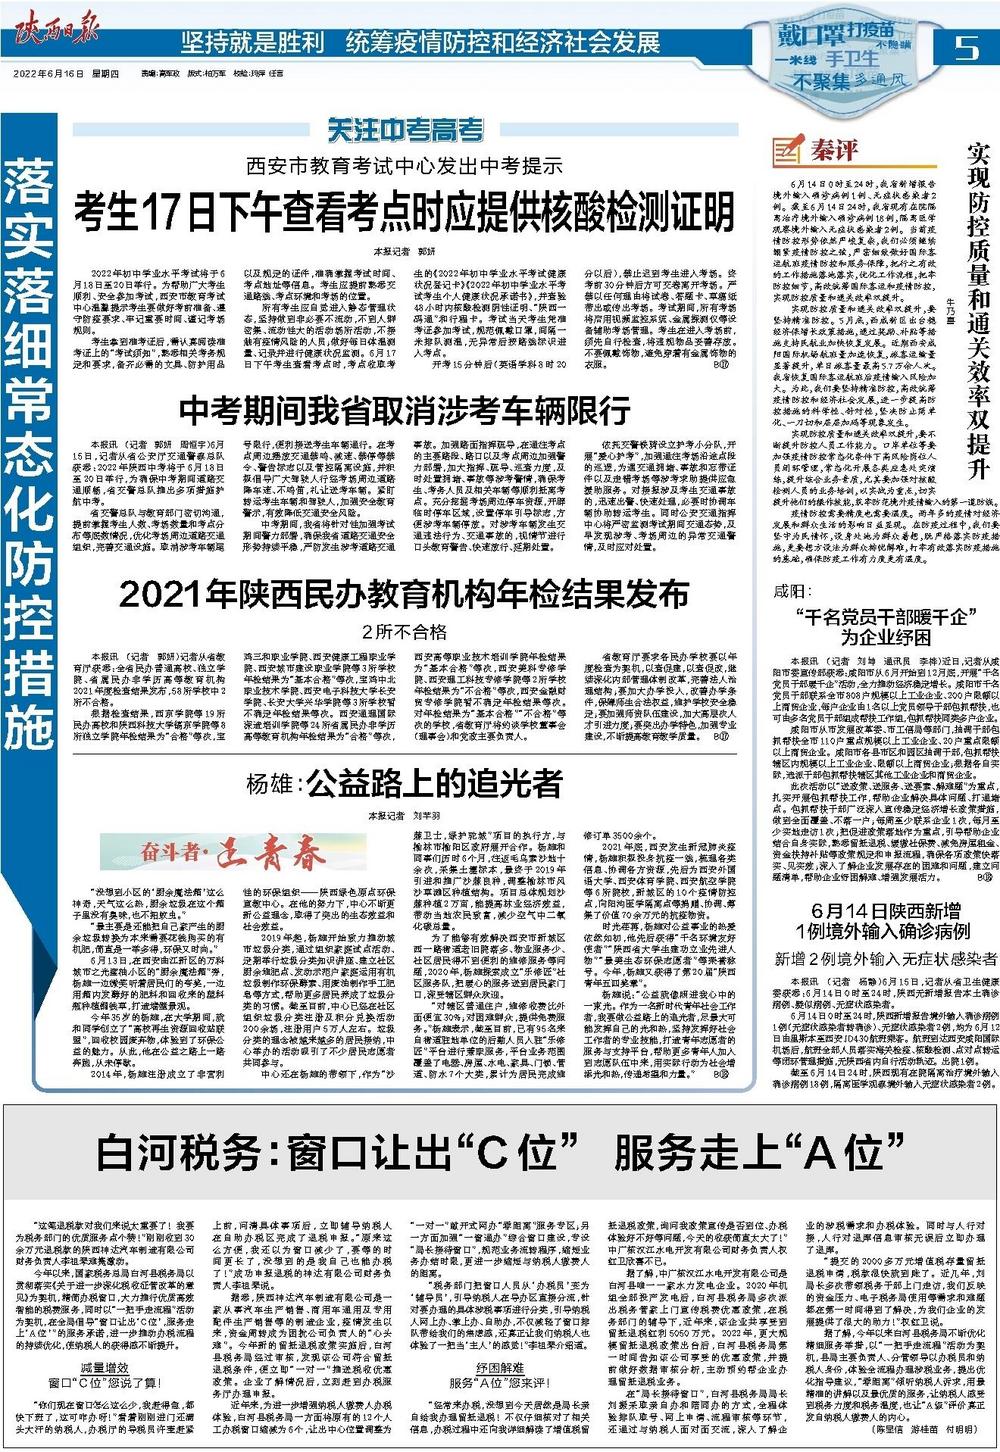 6月14日陕西新增1例境外输入确诊病例 陕西日报数字报 群众新闻网